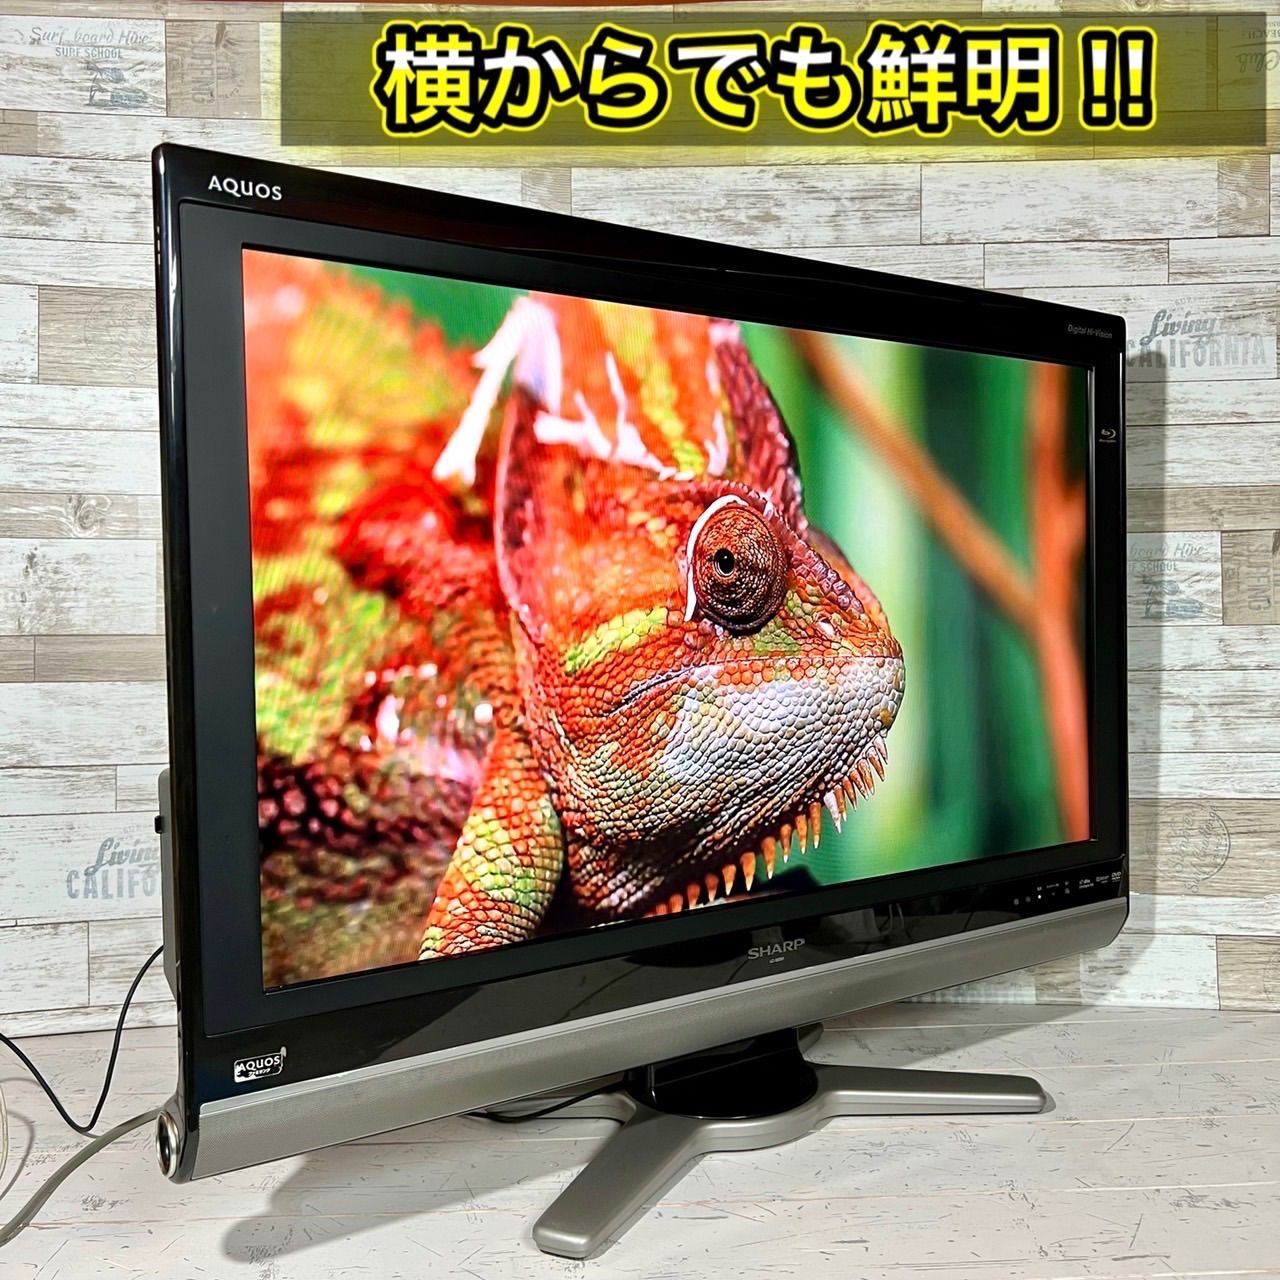 SHARP AQUOS 液晶カラーテレビ LC-20DX1 - テレビ